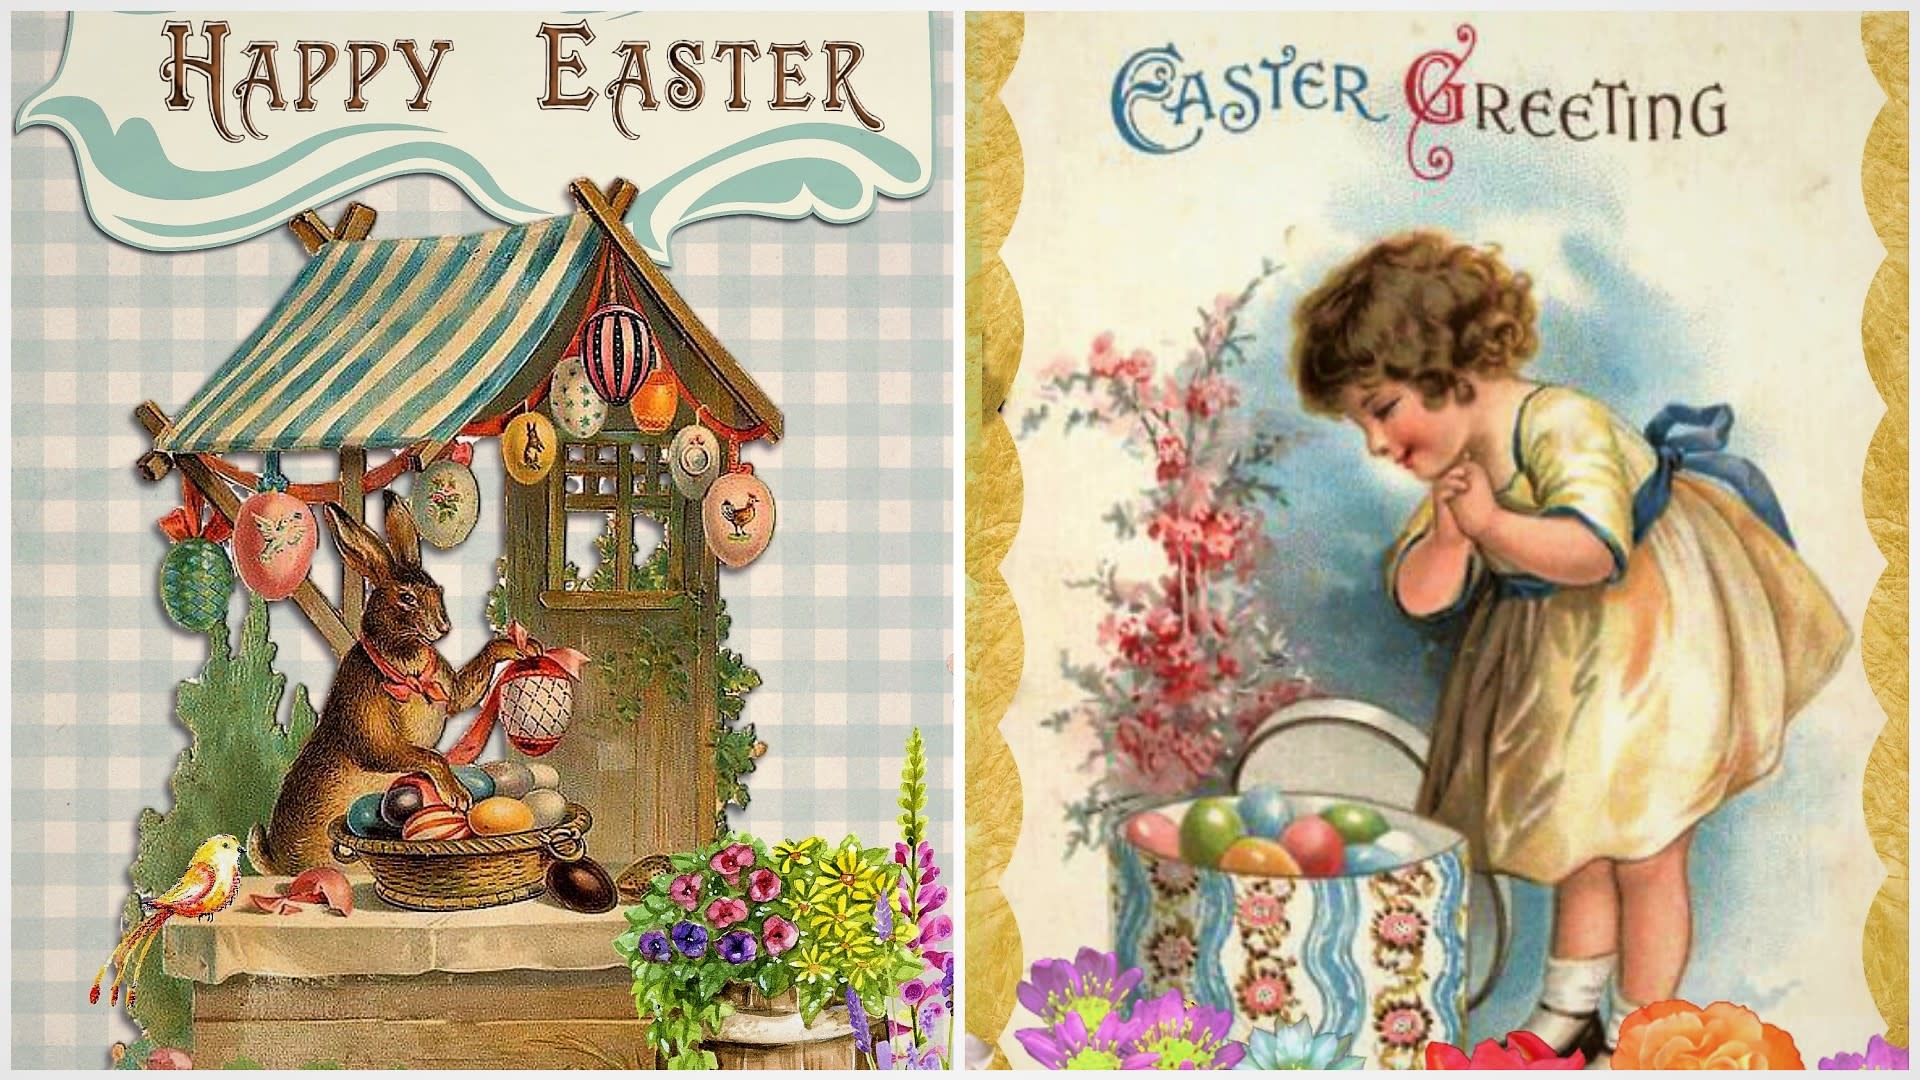 Popřát hezké Velikonoce a bohatou pomlázku písemně prostřednictvím papírové pohlednice je oblíbený zvyk už takřka 150 let.